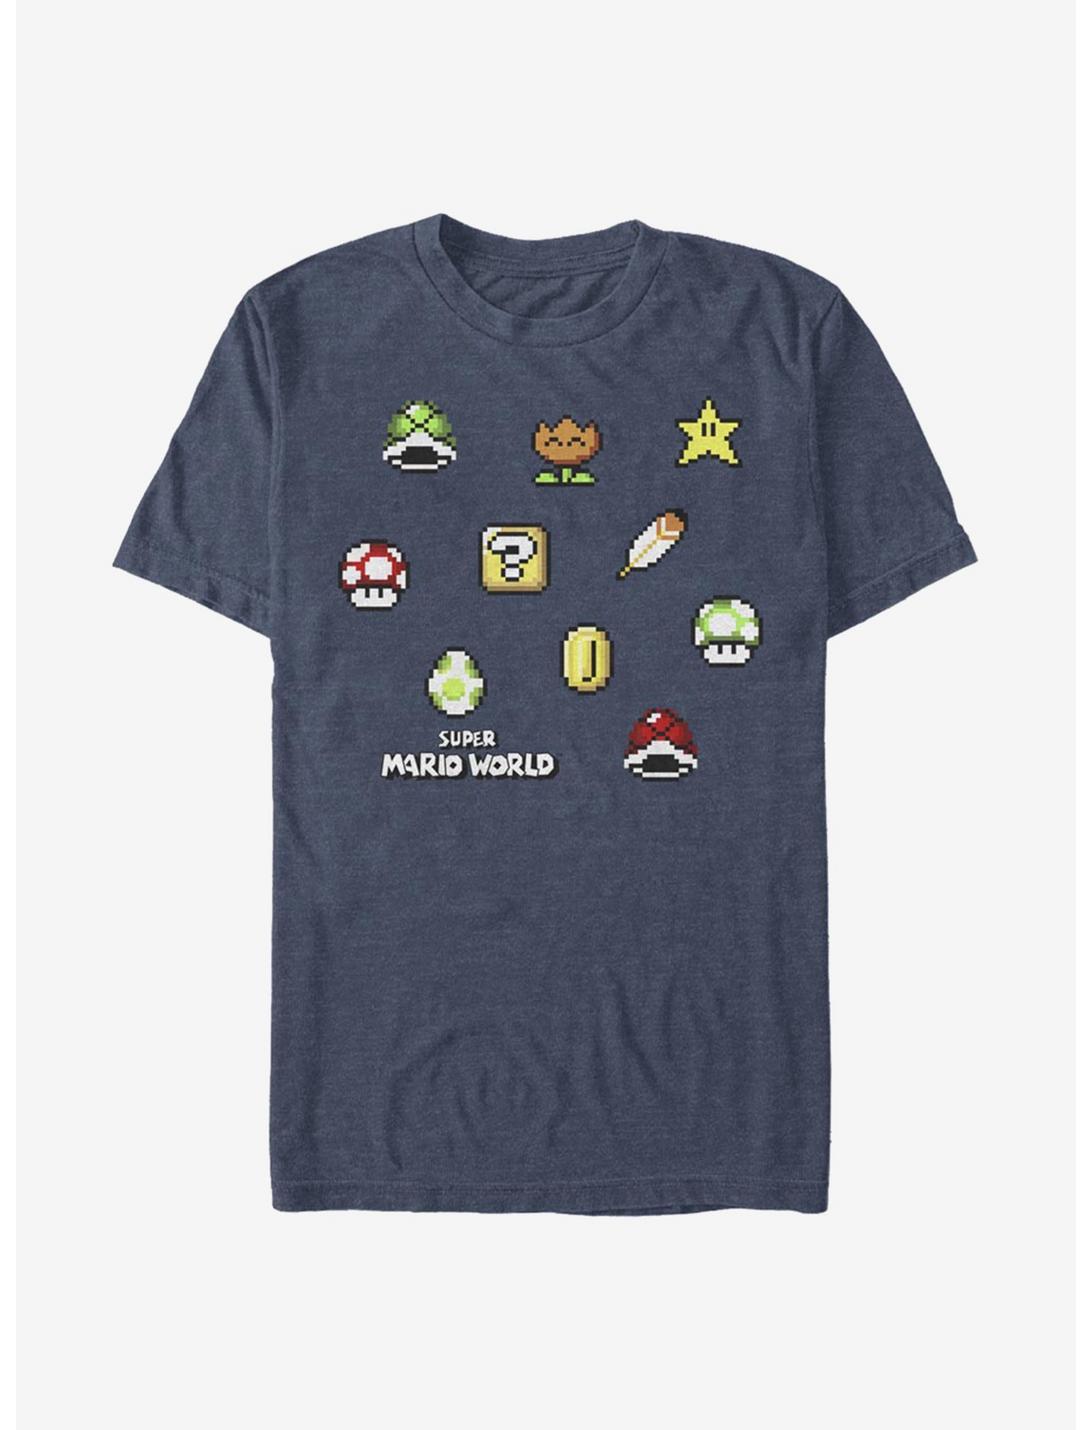 Super Mario Maker Items Scatter T-Shirt, NAVY HTR, hi-res